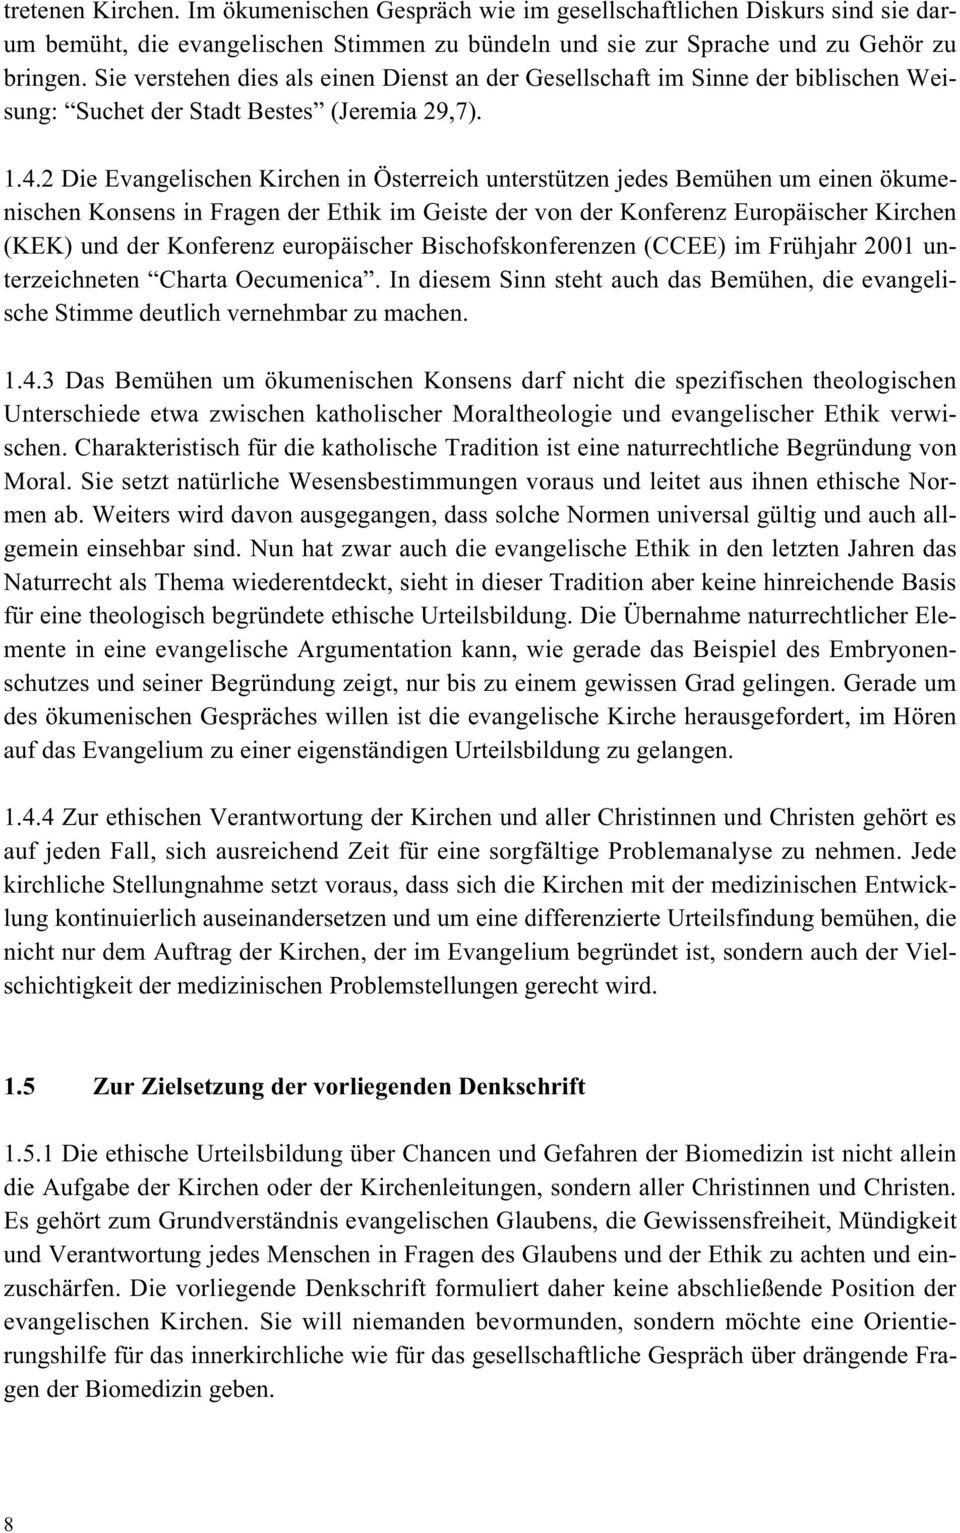 2 Die Evangelischen Kirchen in Österreich unterstützen jedes Bemühen um einen ökumenischen Konsens in Fragen der Ethik im Geiste der von der Konferenz Europäischer Kirchen (KEK) und der Konferenz